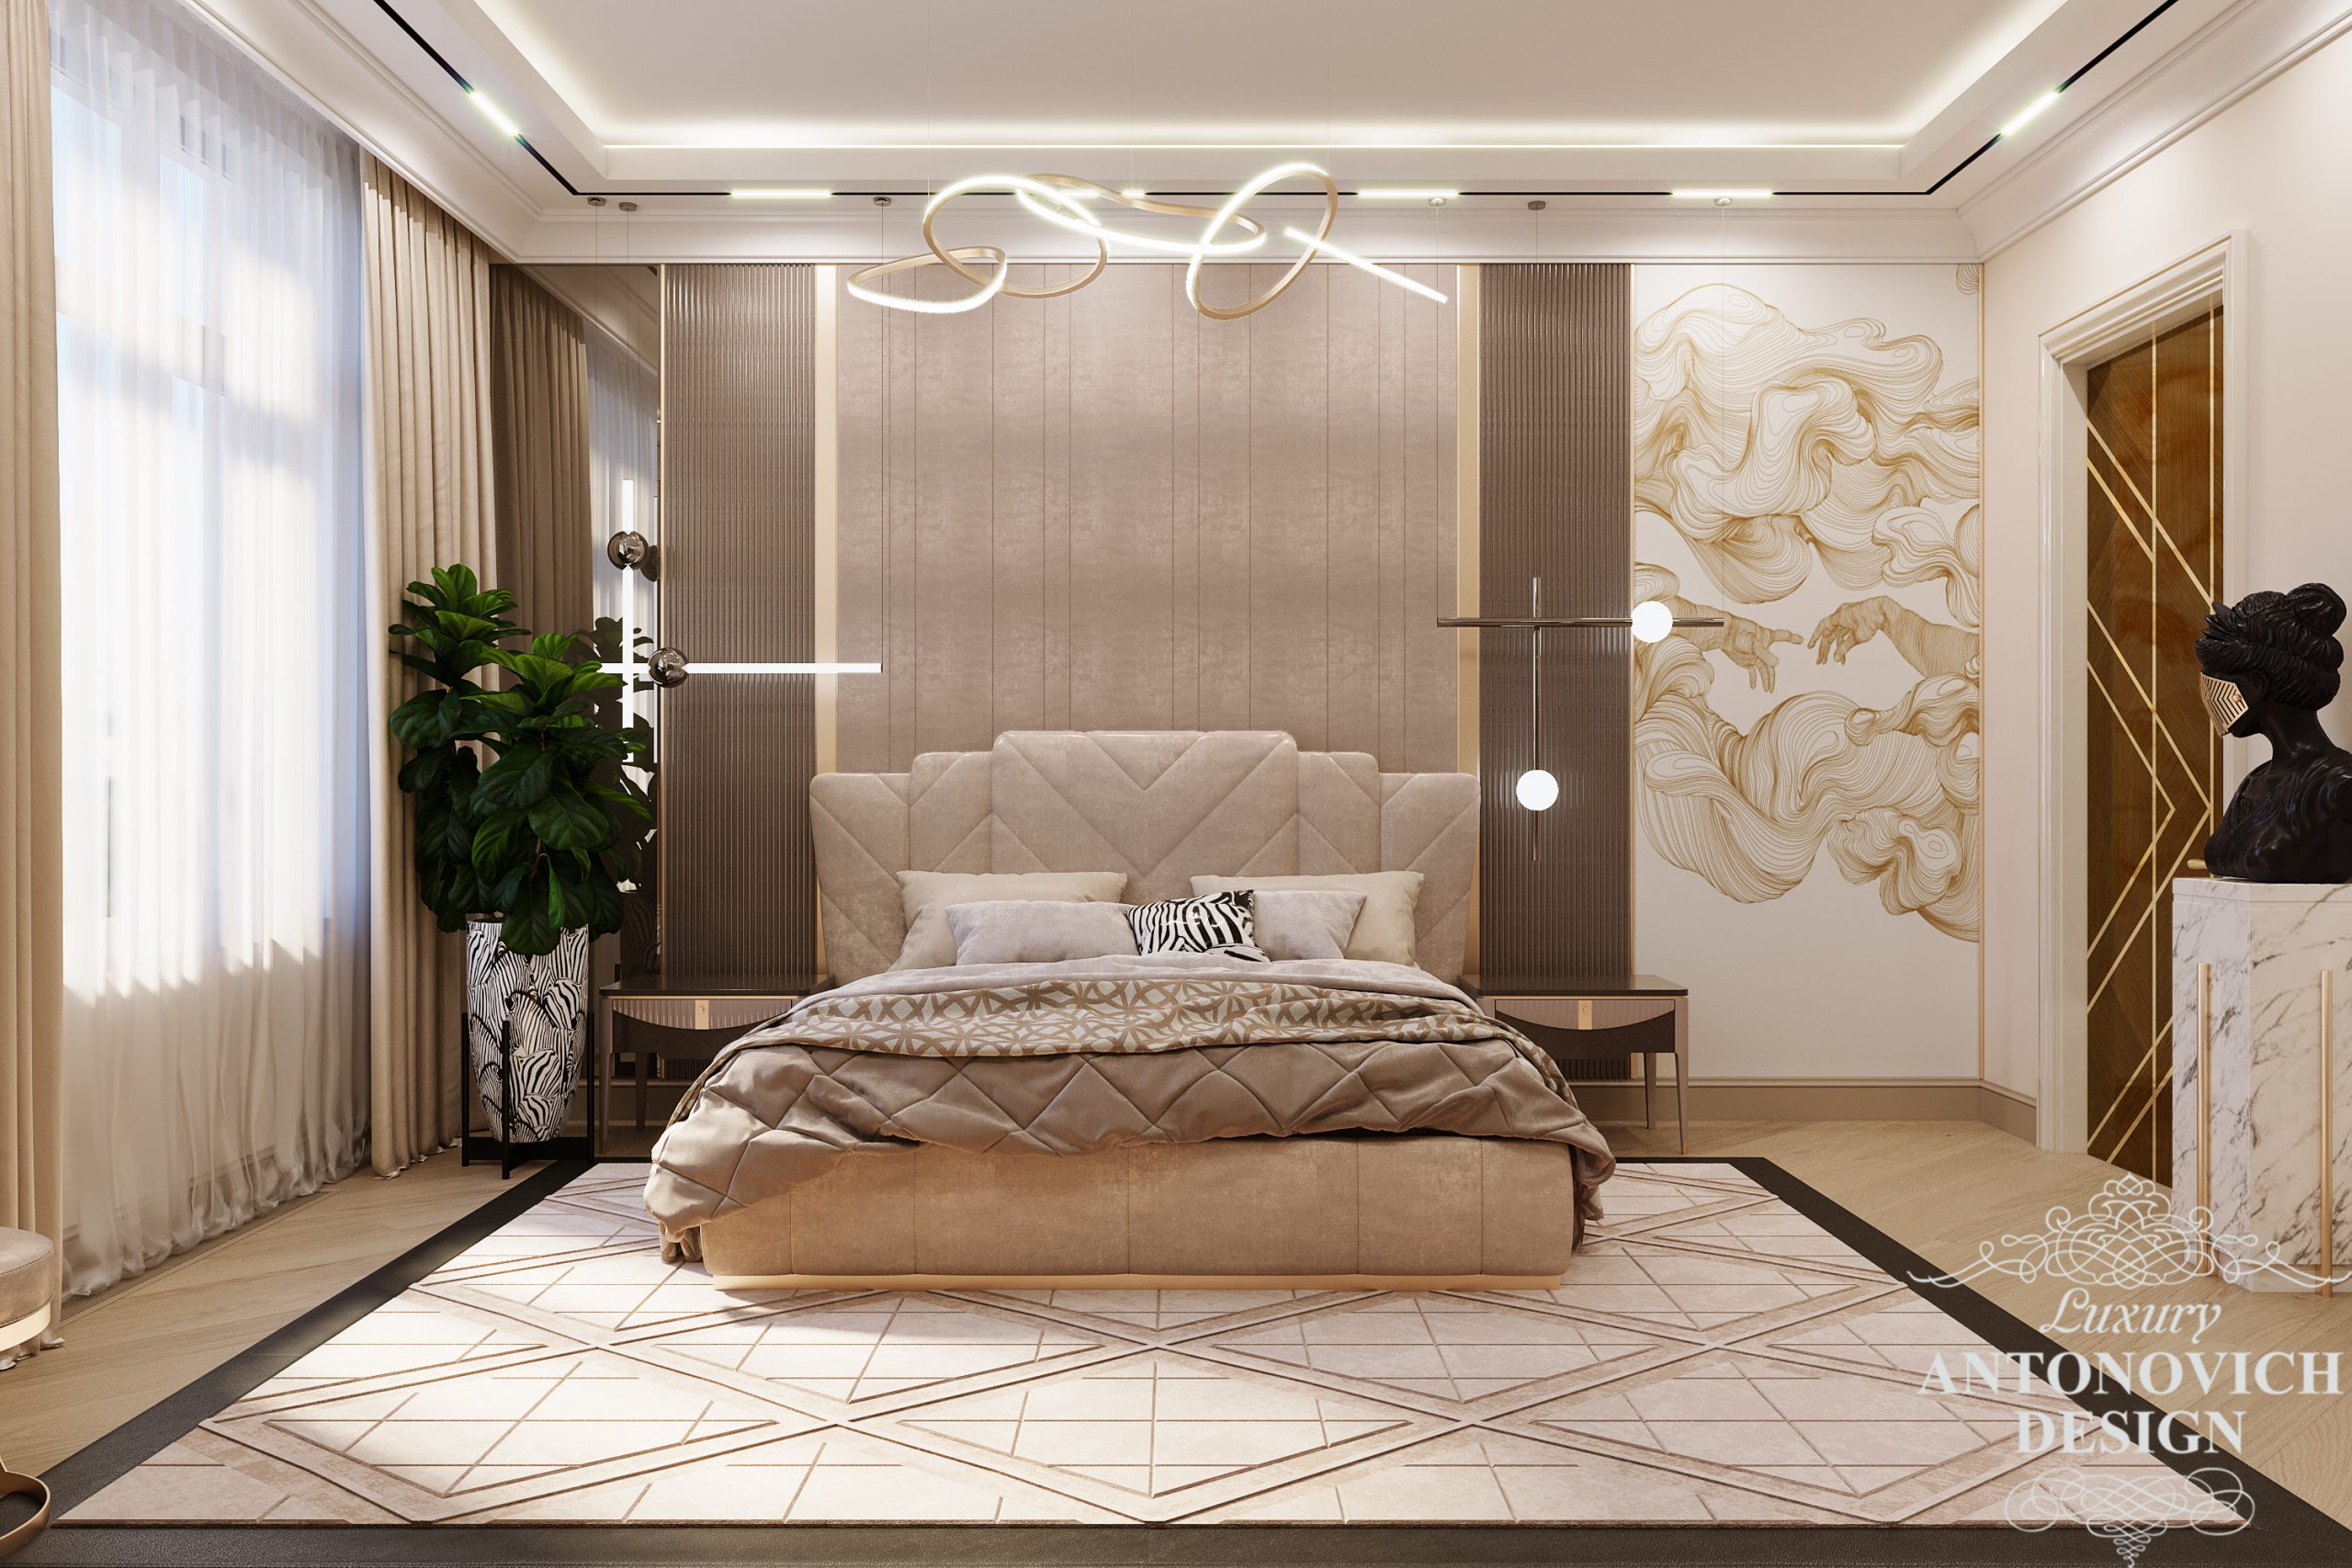 Авторський дизайн-проект майстер спальні в трендових бежевих відтінках і дорогим декором